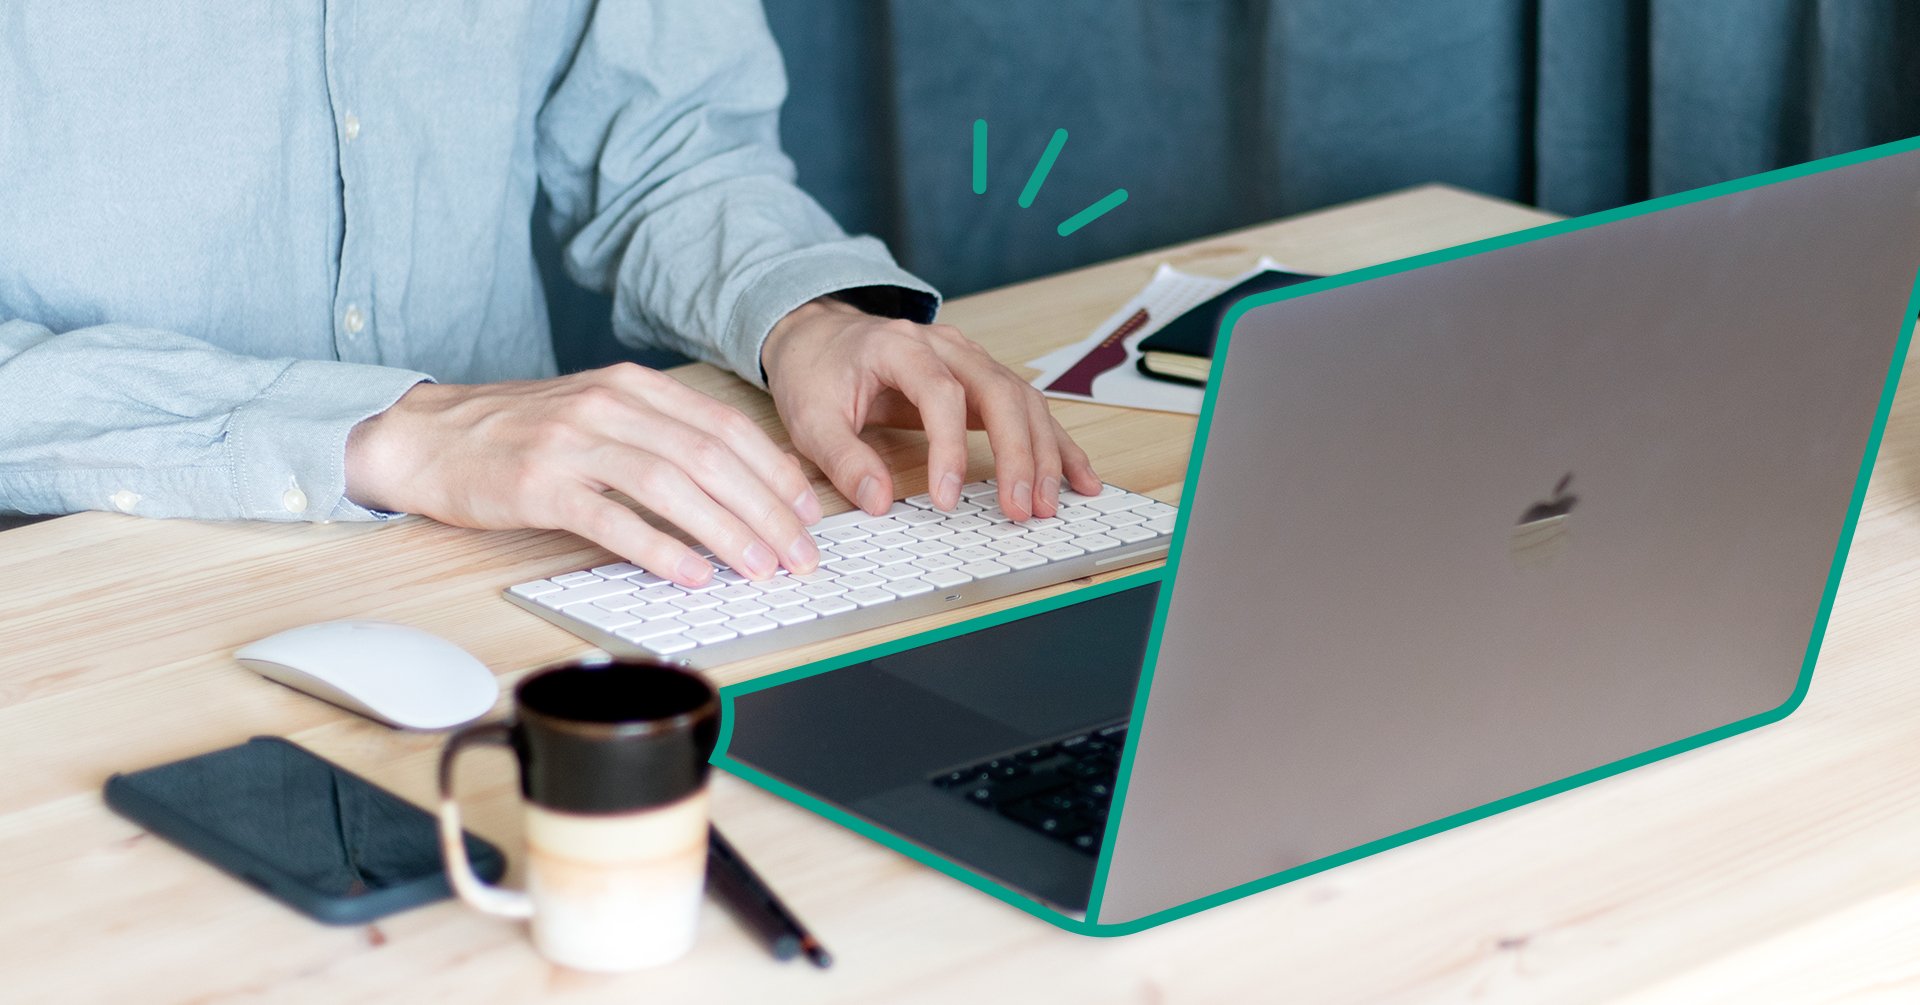 På bilden syns en person som knappar på en laptop. Jämte laptopen finns en kaffemugg, en datormus och en mobiltelefon.